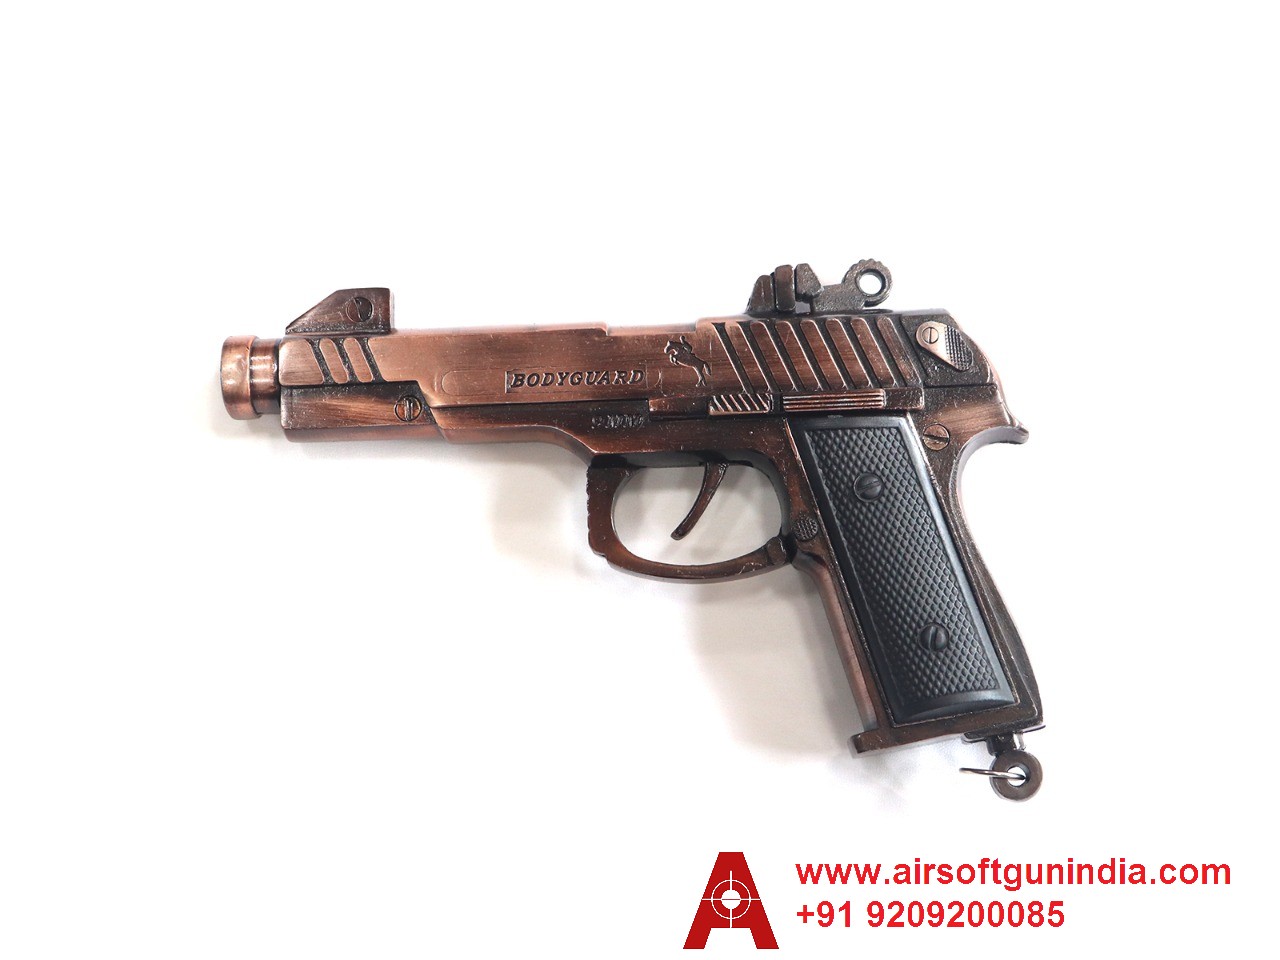 Cork Toy Sound Gun Rosey By Airsoft Gun India